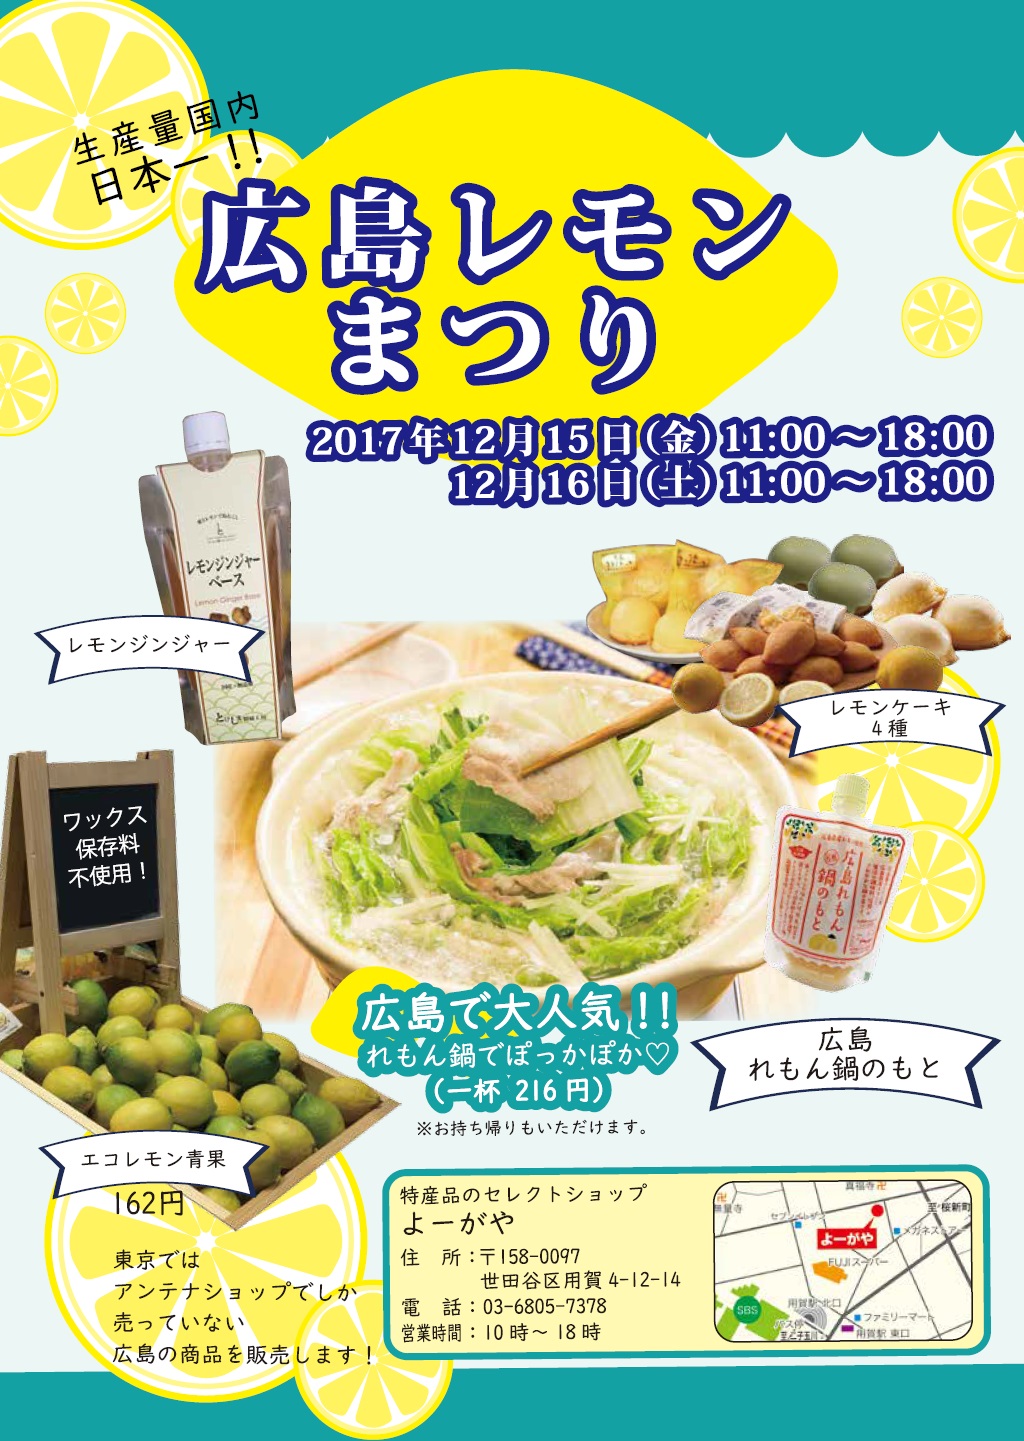 世田谷区用賀にある「よーがや」にて『広島レモンまつり』を開催！